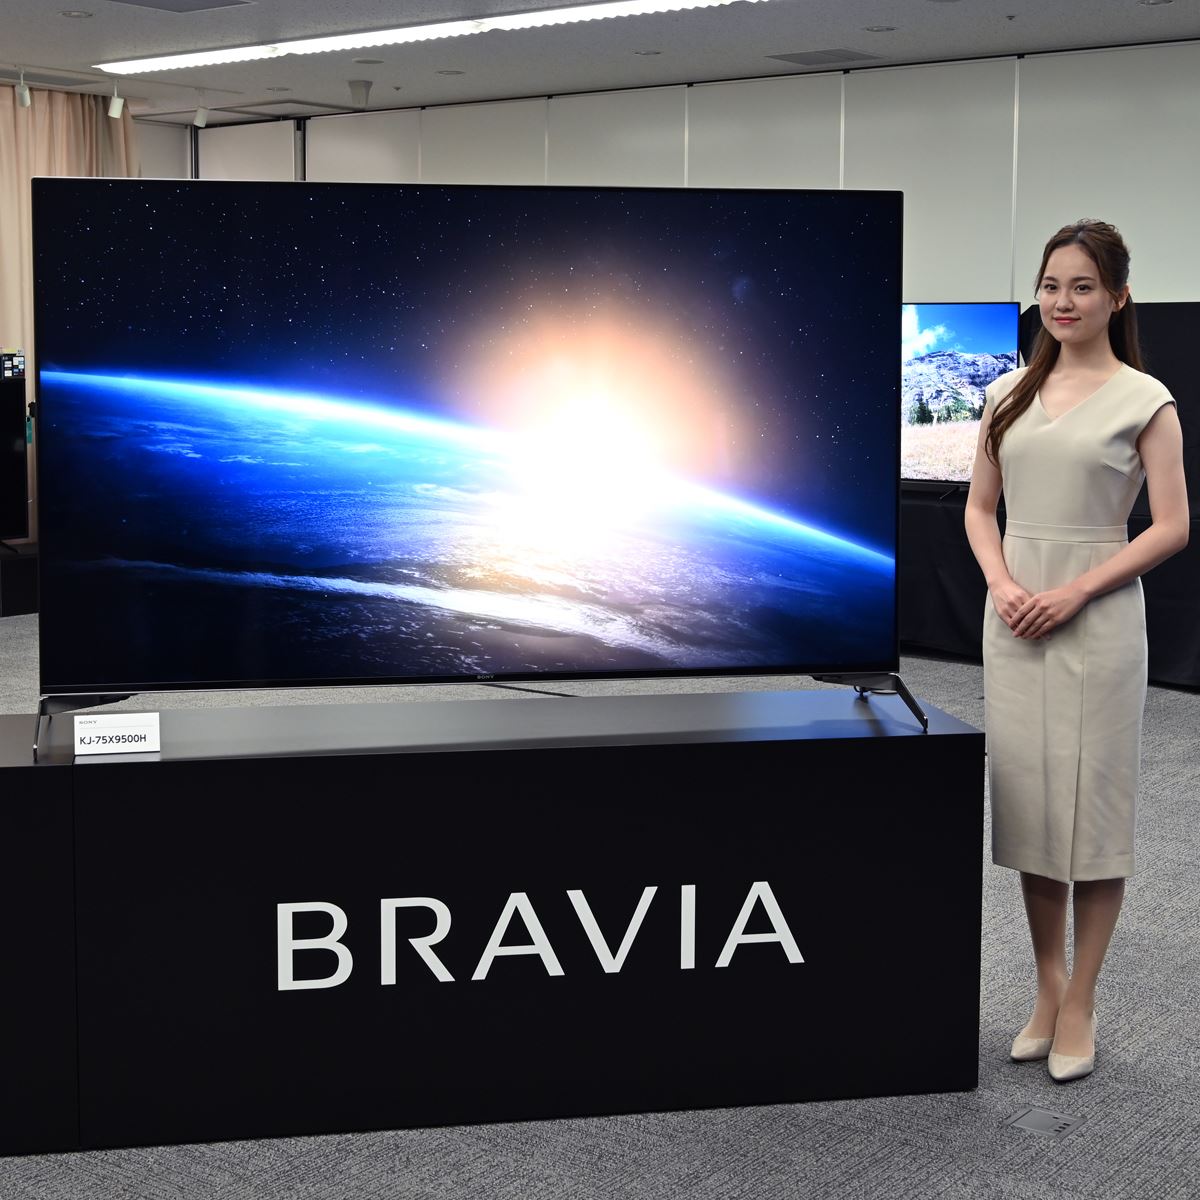 テレビ/映像機器 テレビ カラフルセット 3個 BRAVIA KJ 75X 9500H 2020年最上位モデル 液晶 